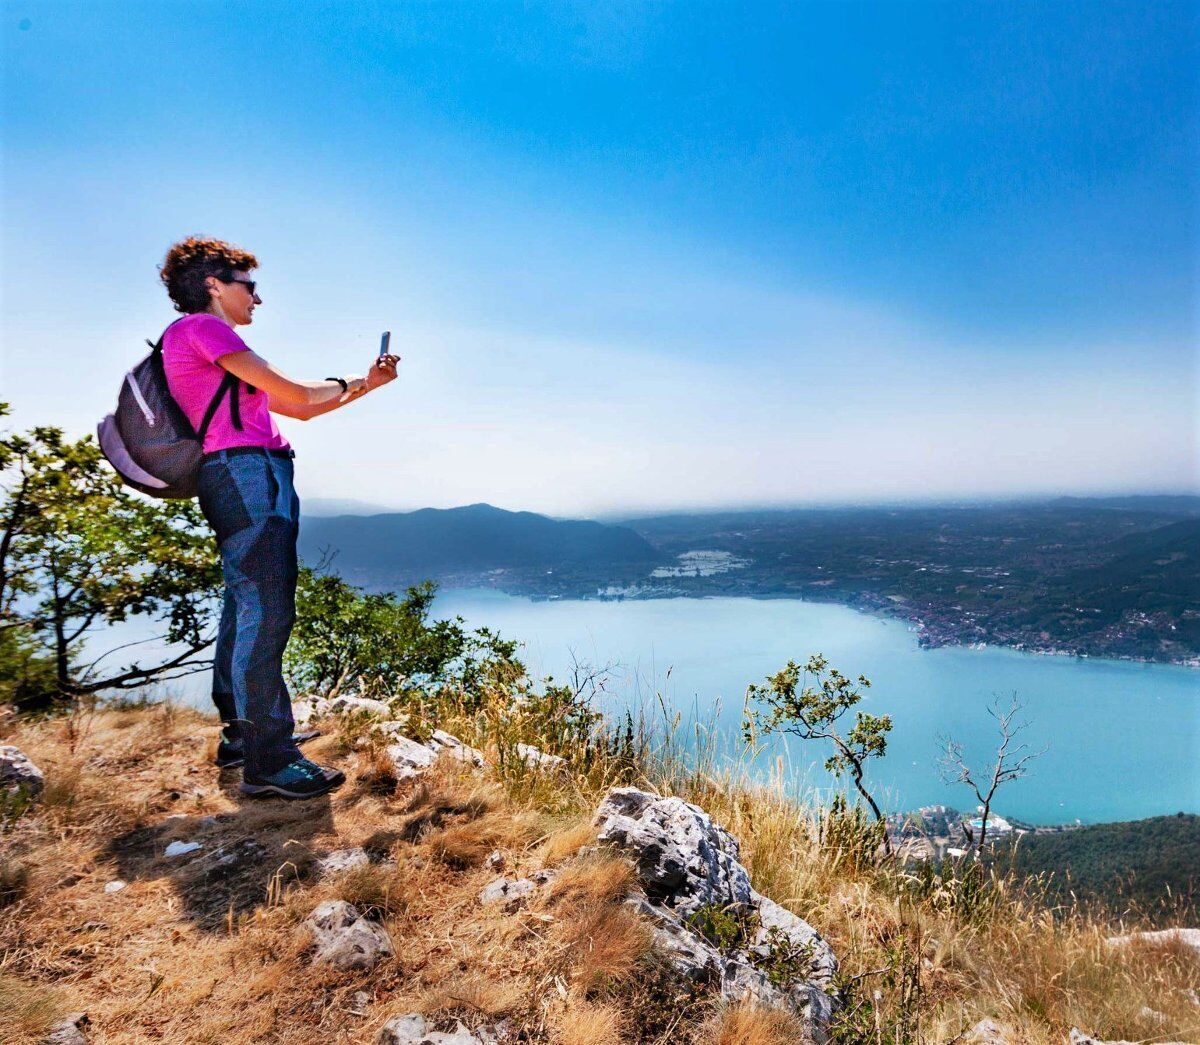 Camminata sul Lago d’Iseo: il Corno Buco e la sua vista mozzafiato desktop picture